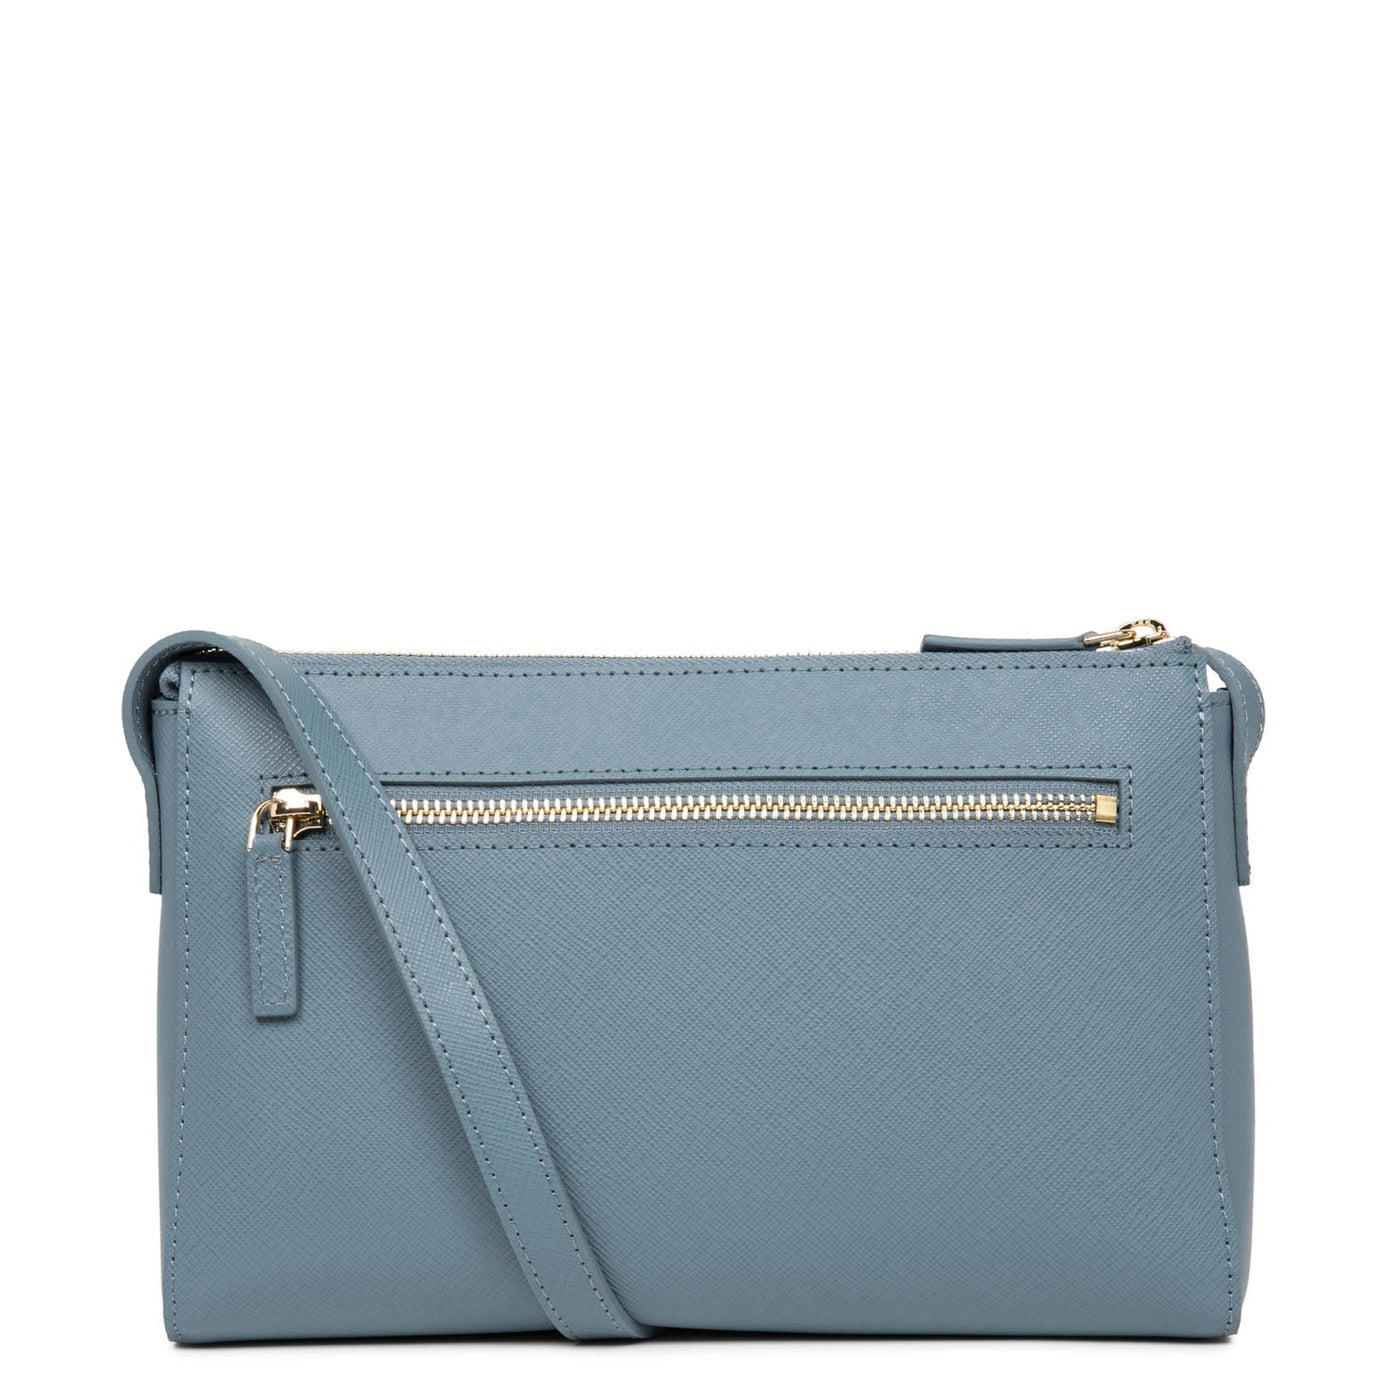 crossbody bag - saffiano signature #couleur_bleu-ardoise